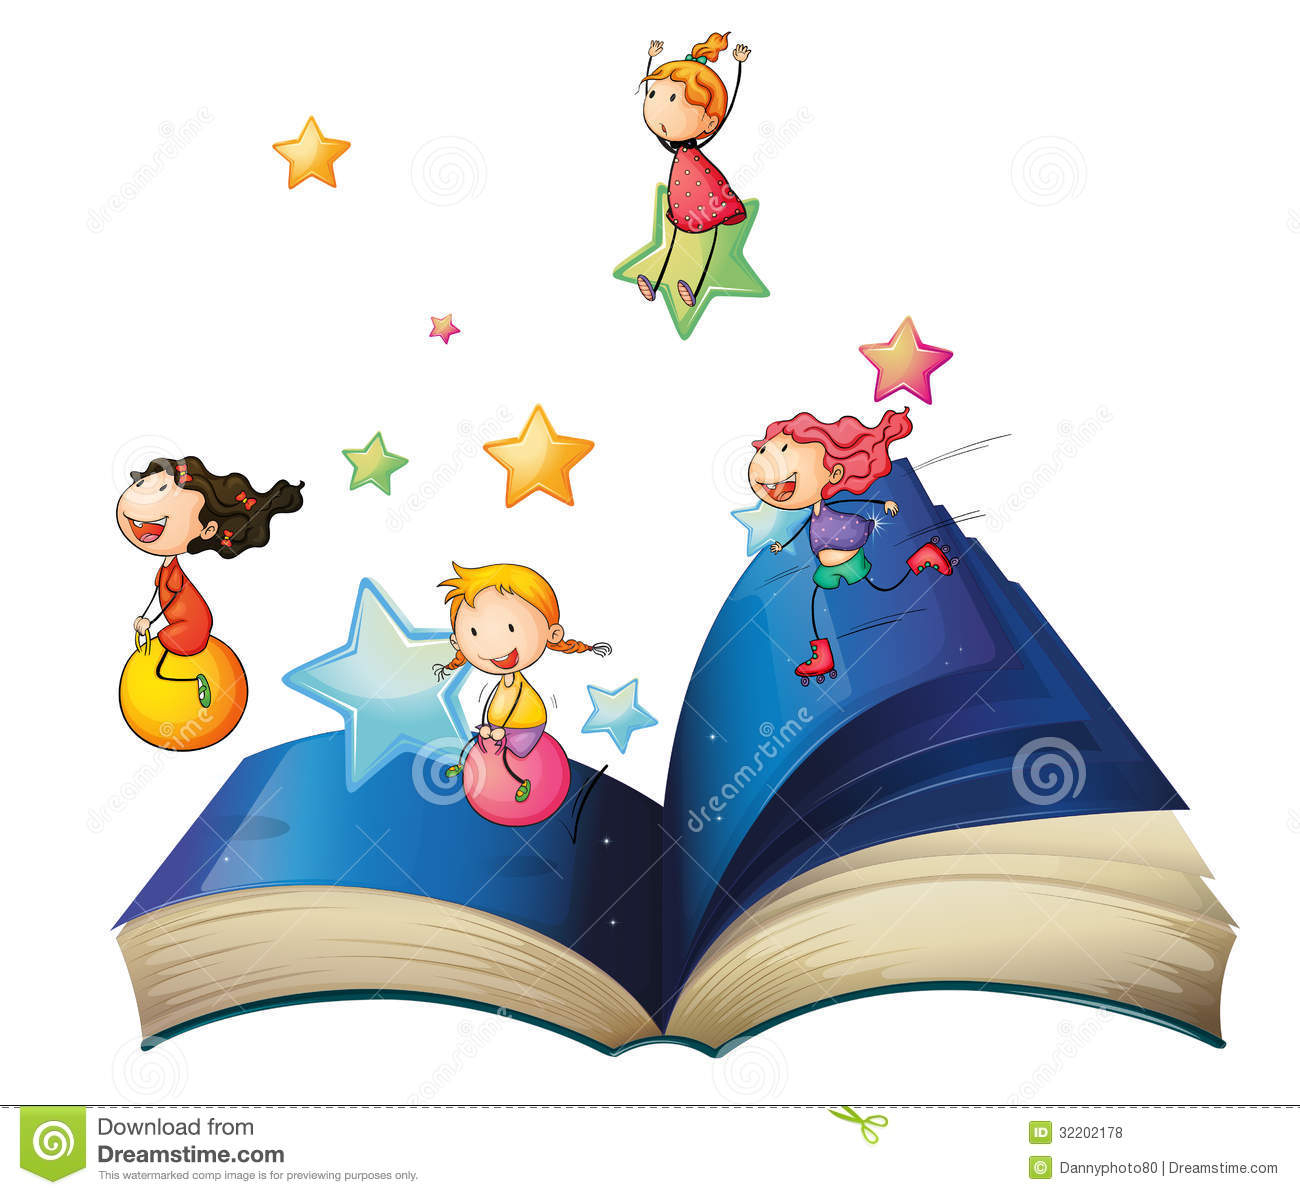 Un Livre Avec Jouer D'Enfants Illustration De Vecteur - Illustration Du tout Dessin De Livre